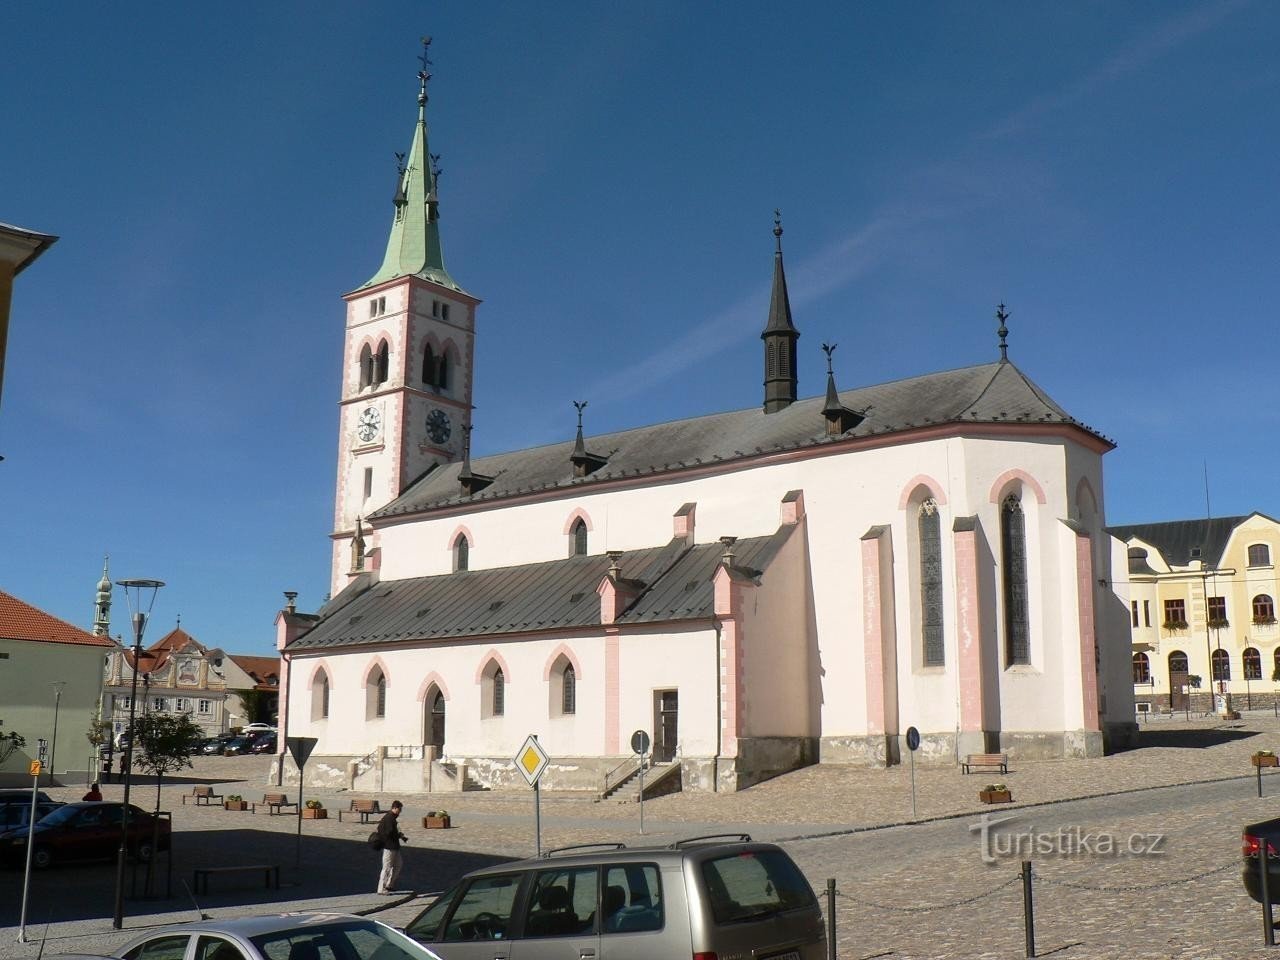 Kašperské Hory, church of St. Markets